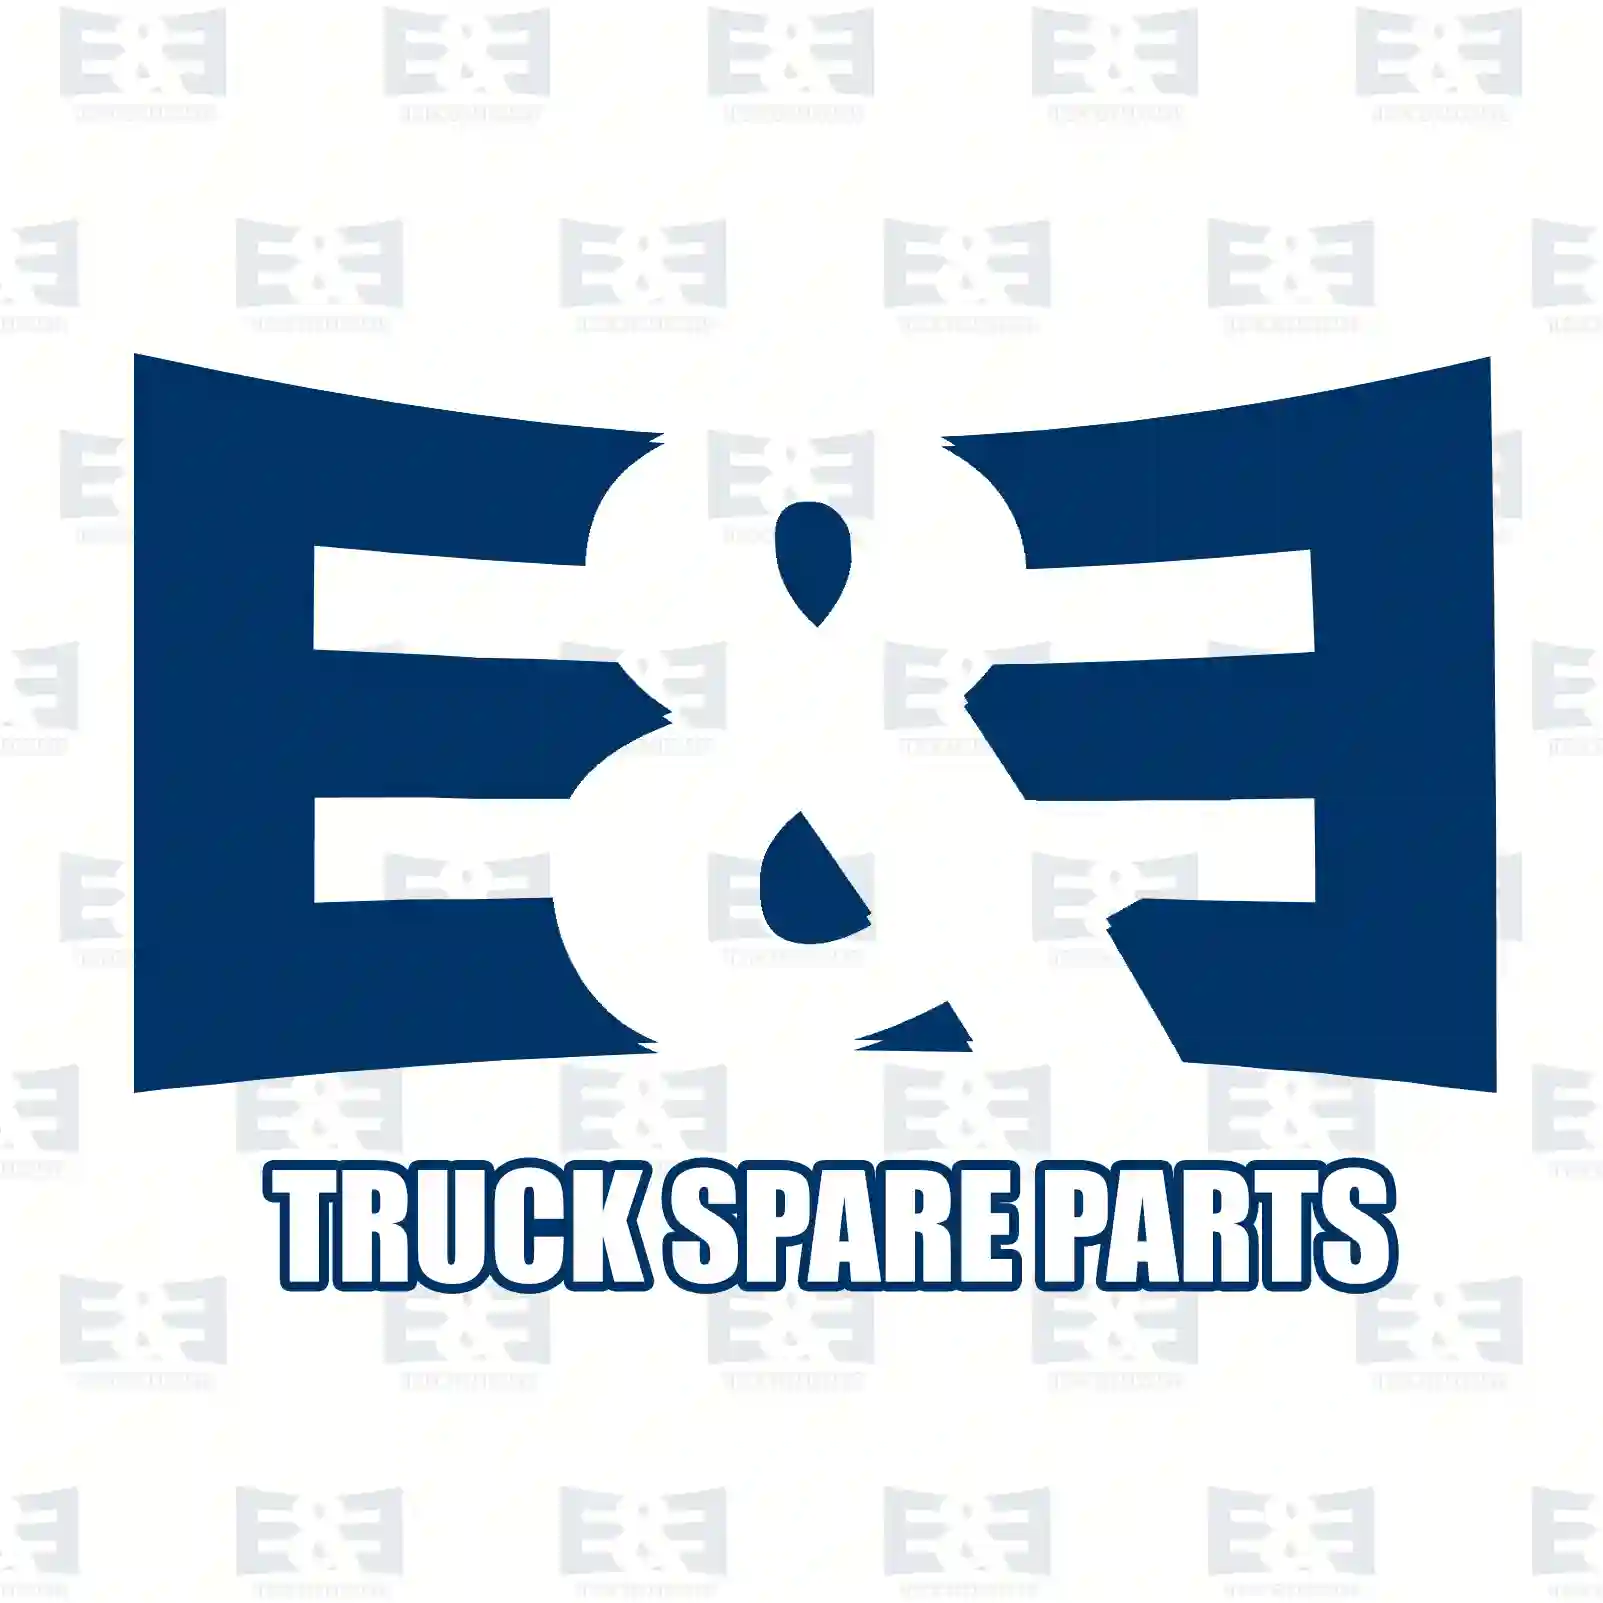 Brake light switch, 2E2290920, 5101495AA, 0005457709, 0005458609, 0005459909, 0015450109, 1545010928 ||  2E2290920 E&E Truck Spare Parts | Truck Spare Parts, Auotomotive Spare Parts Brake light switch, 2E2290920, 5101495AA, 0005457709, 0005458609, 0005459909, 0015450109, 1545010928 ||  2E2290920 E&E Truck Spare Parts | Truck Spare Parts, Auotomotive Spare Parts